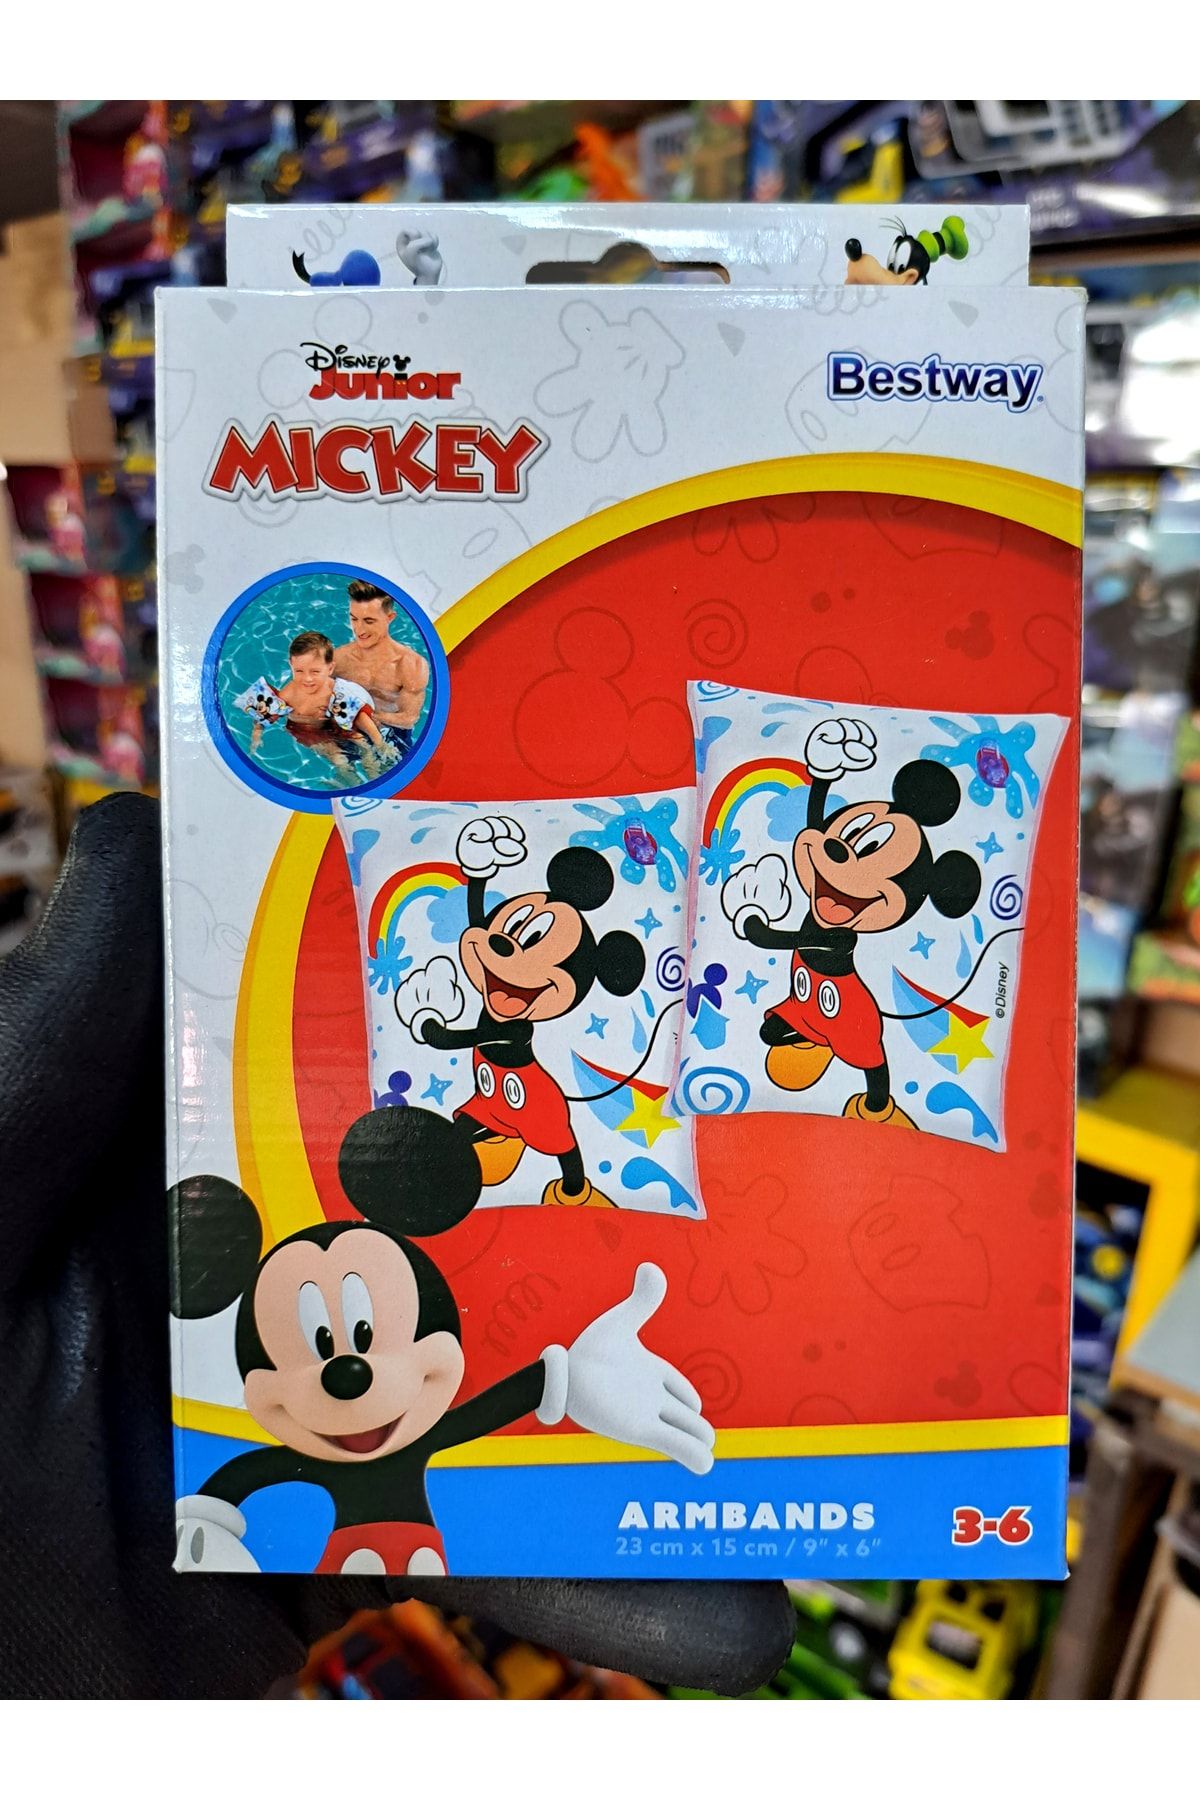 Bestway Erkek Çocuk Mickey Mouse Desenli Kolluk Disney Mickey Mouse Figürlü Deniz Yüzme Kolluğu 20X1 CM